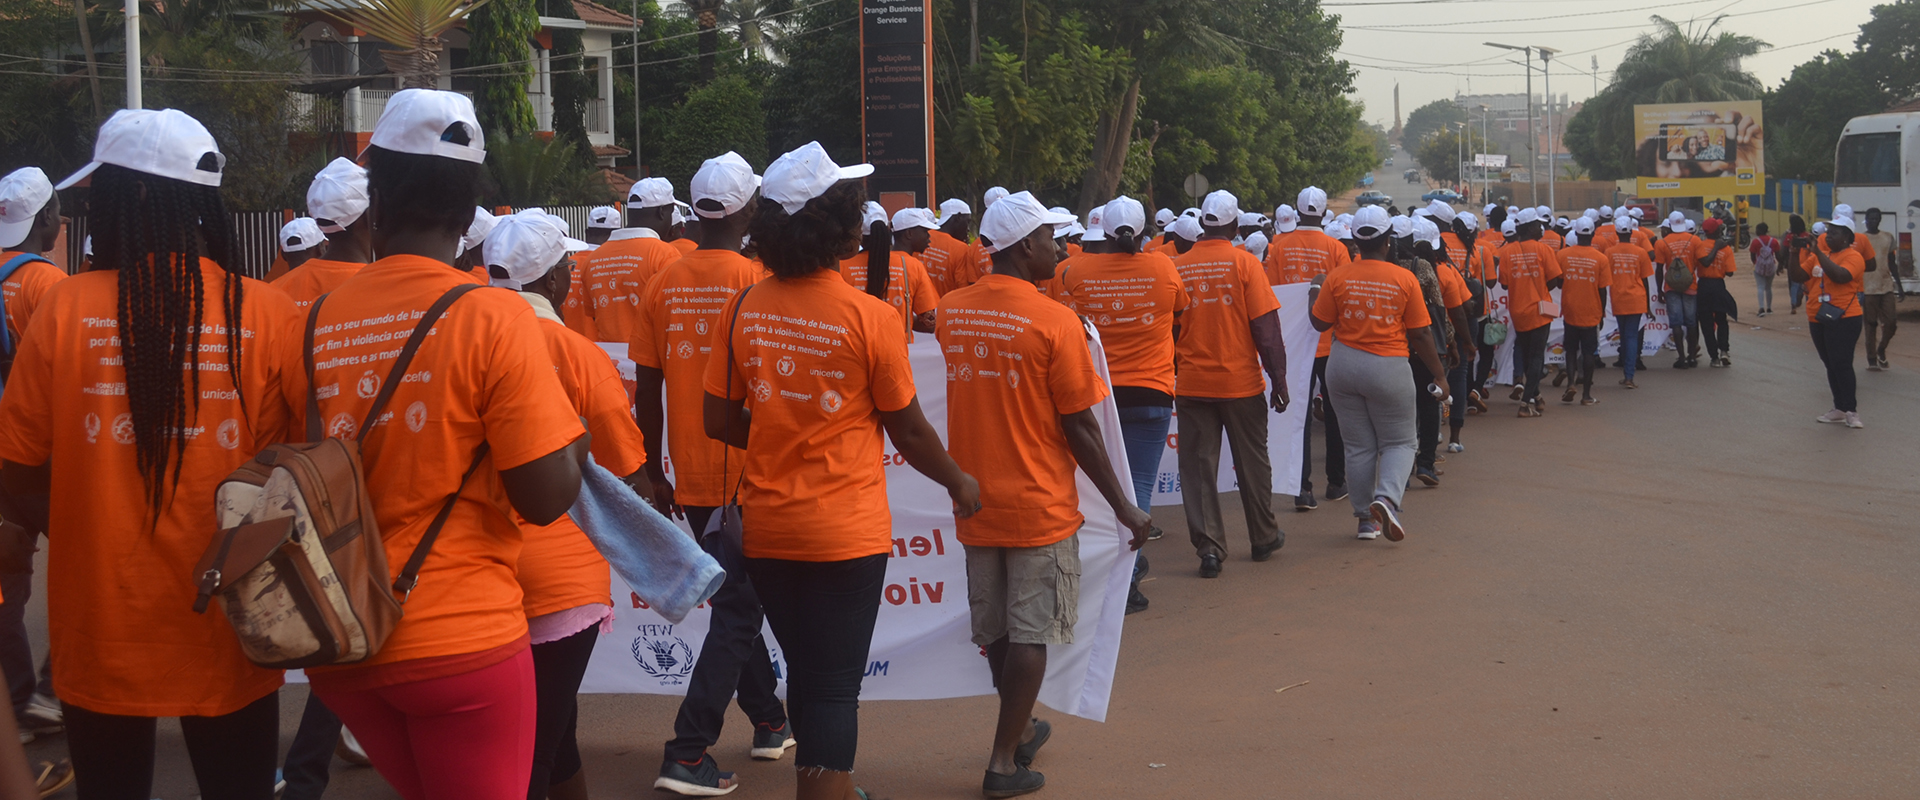 25 novembre marcia violenza donne Mani Tese Guinea Bissau 2018